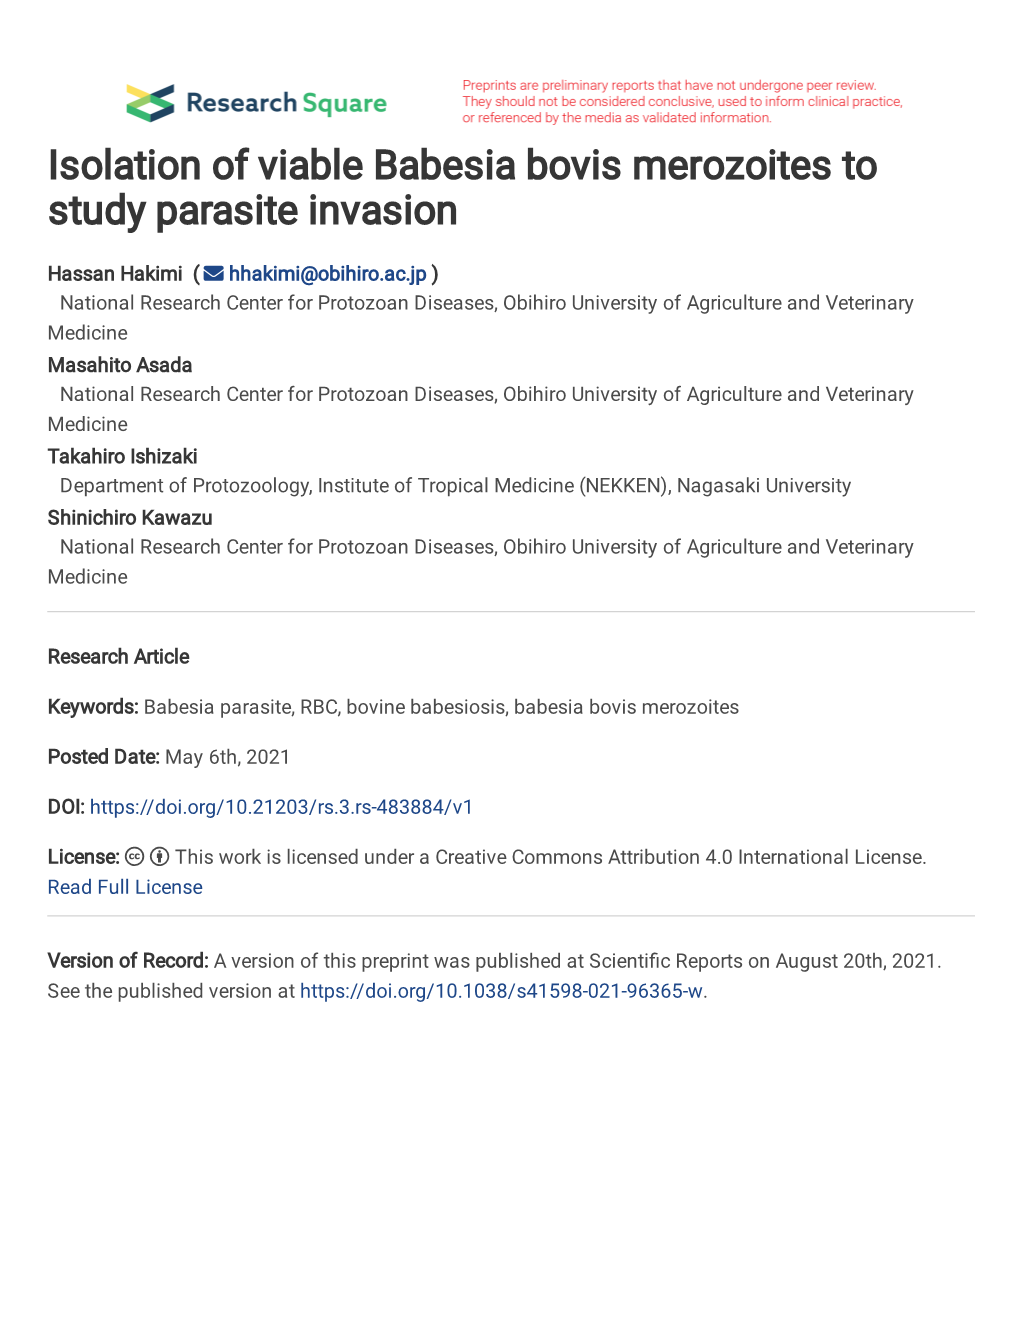 Isolation of Viable Babesia Bovis Merozoites to Study Parasite Invasion